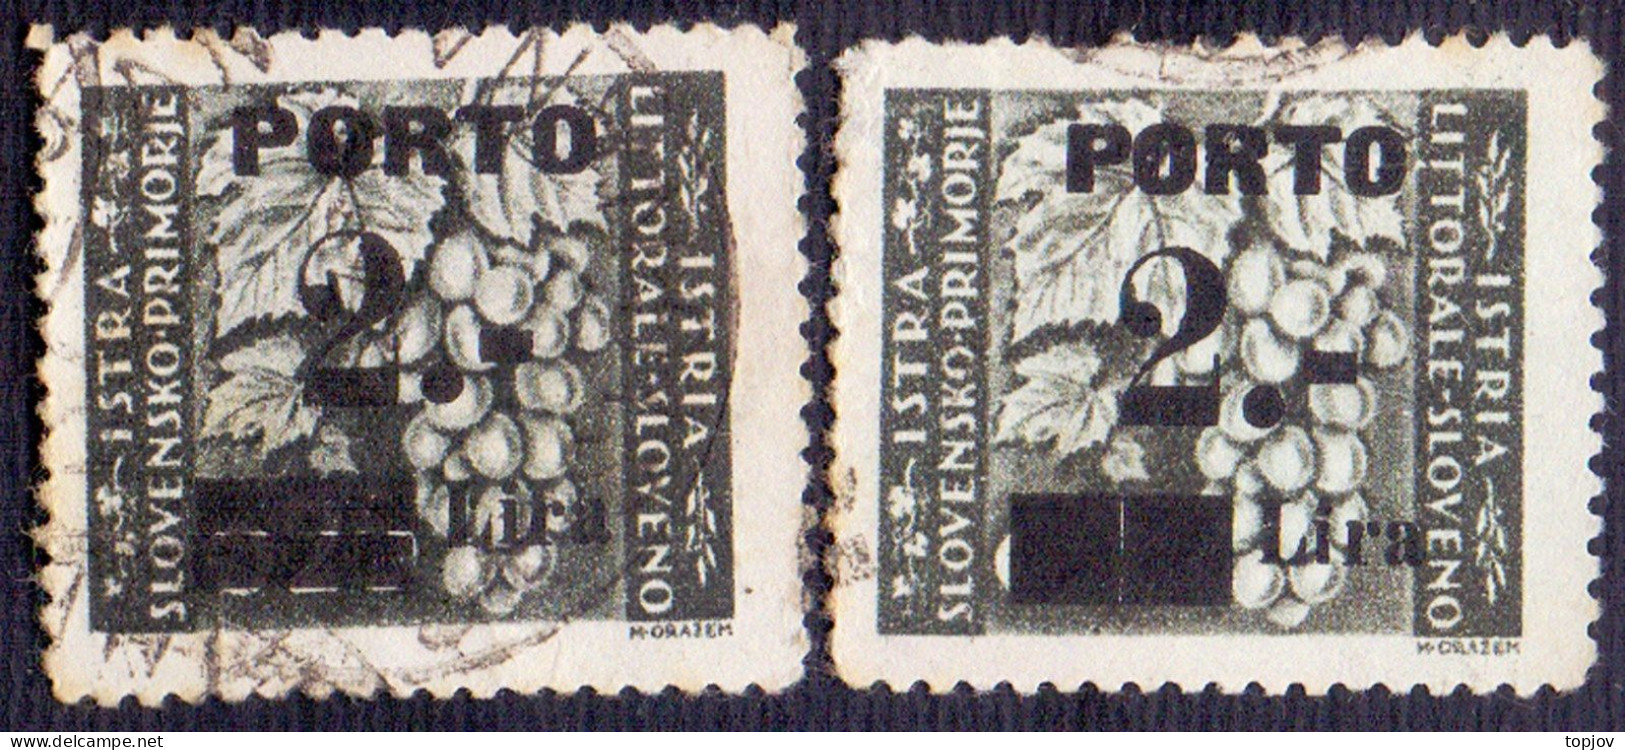 LITORALE - SLOVENIA - ITALIA - Sas. 15/II+15/III Tassello - Used - 1946 - Postage Due